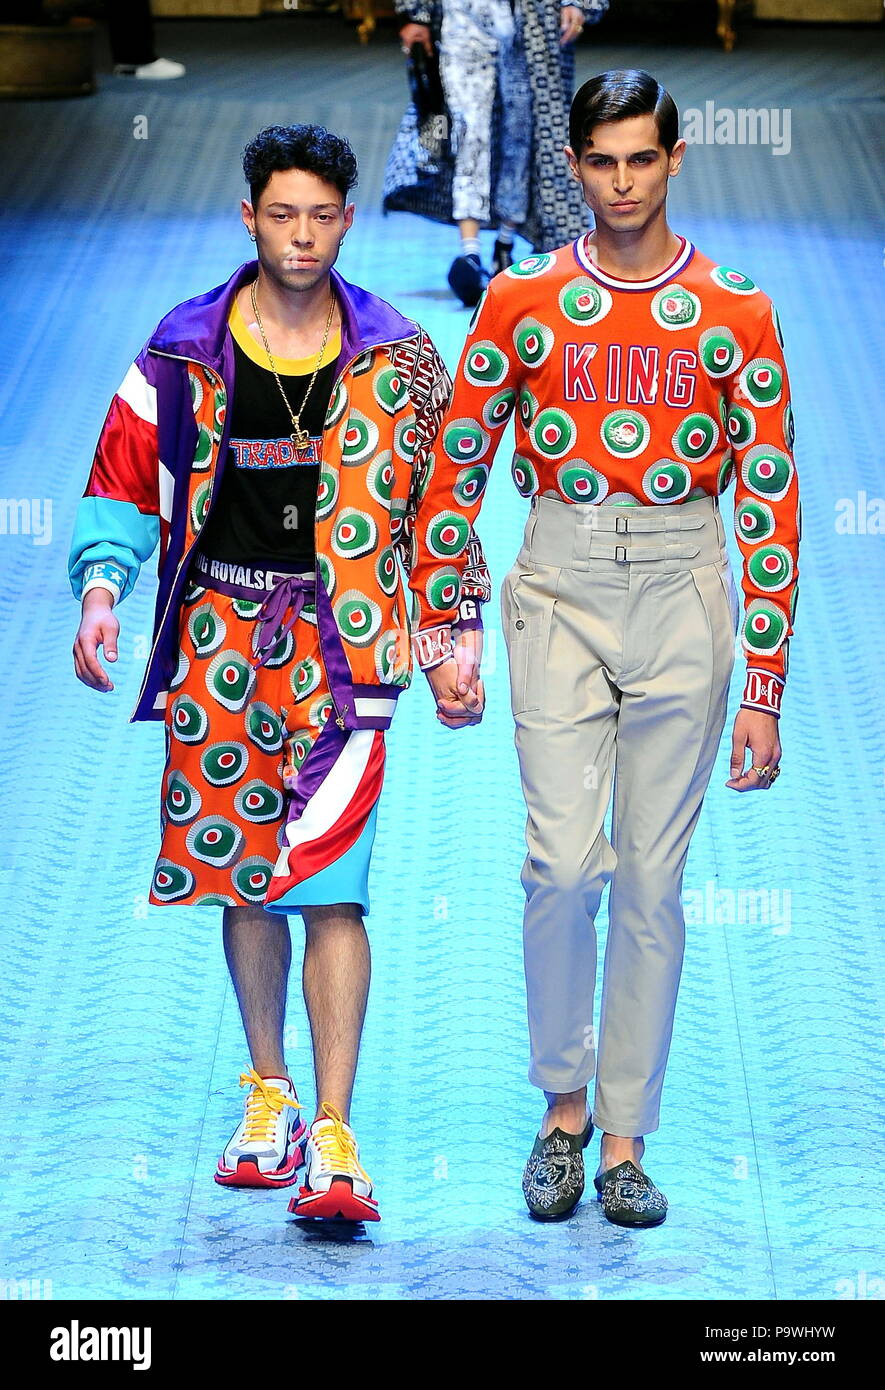 La Semana de la moda de Milán para hombres - Dolce & Gabbana Primavera/Verano 2019 La moda masculina - Catwalk con: modelo donde: Milán, Italia cuando: 16 de junio de